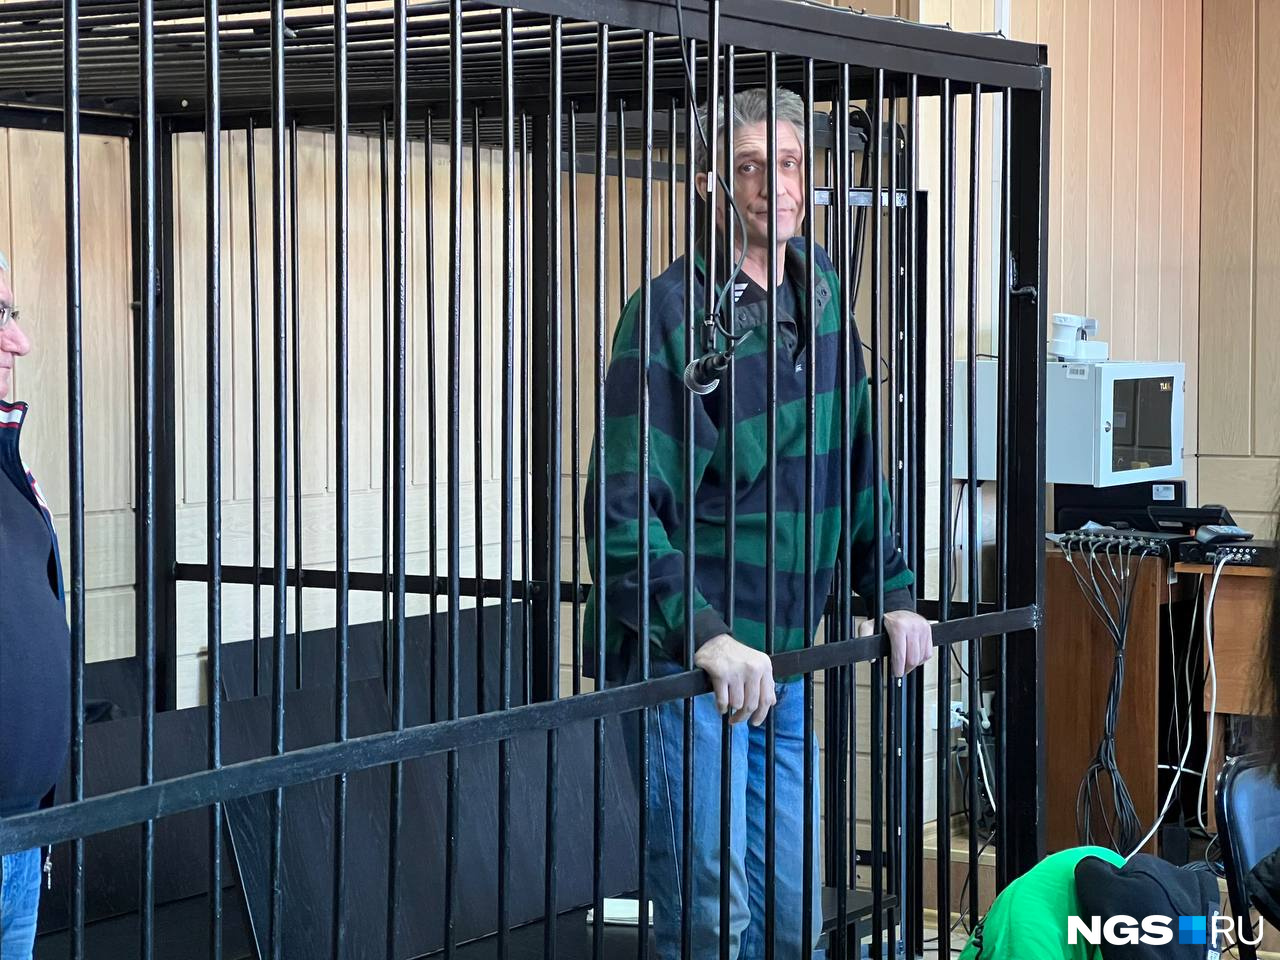 Александр Морозов единственный из троих фигурантов заявил, что виноват в убийстве... По его словам, он хотел ограбить роскошный коттедж